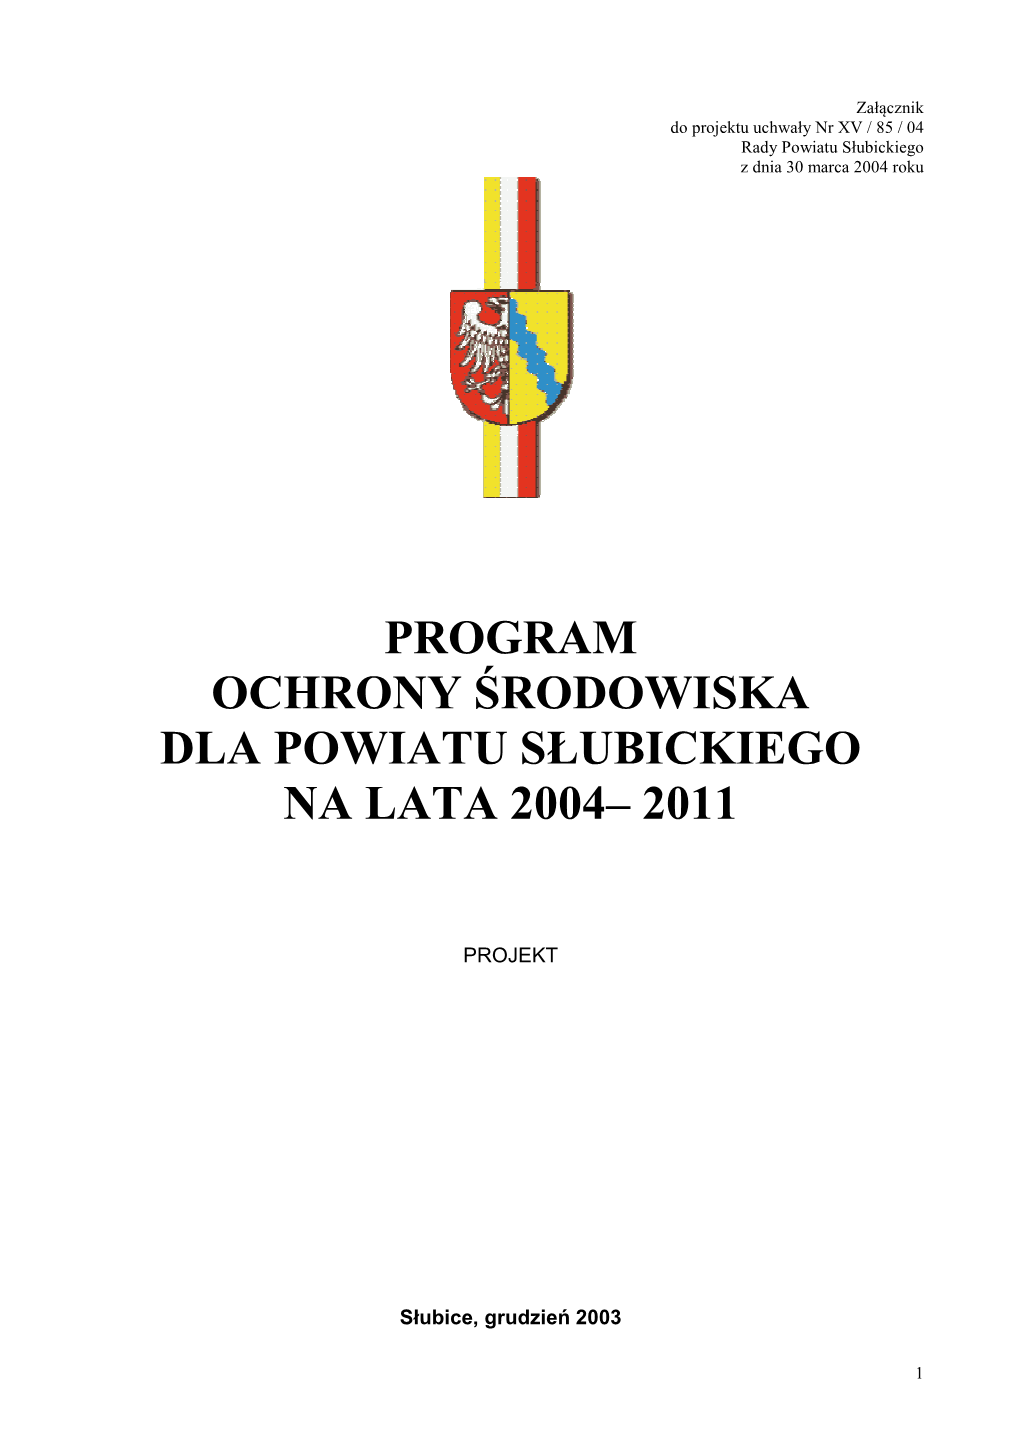 Program Ochrony Środowiska Dla Powiatu Słubickiego Na Lata 2004– 2011